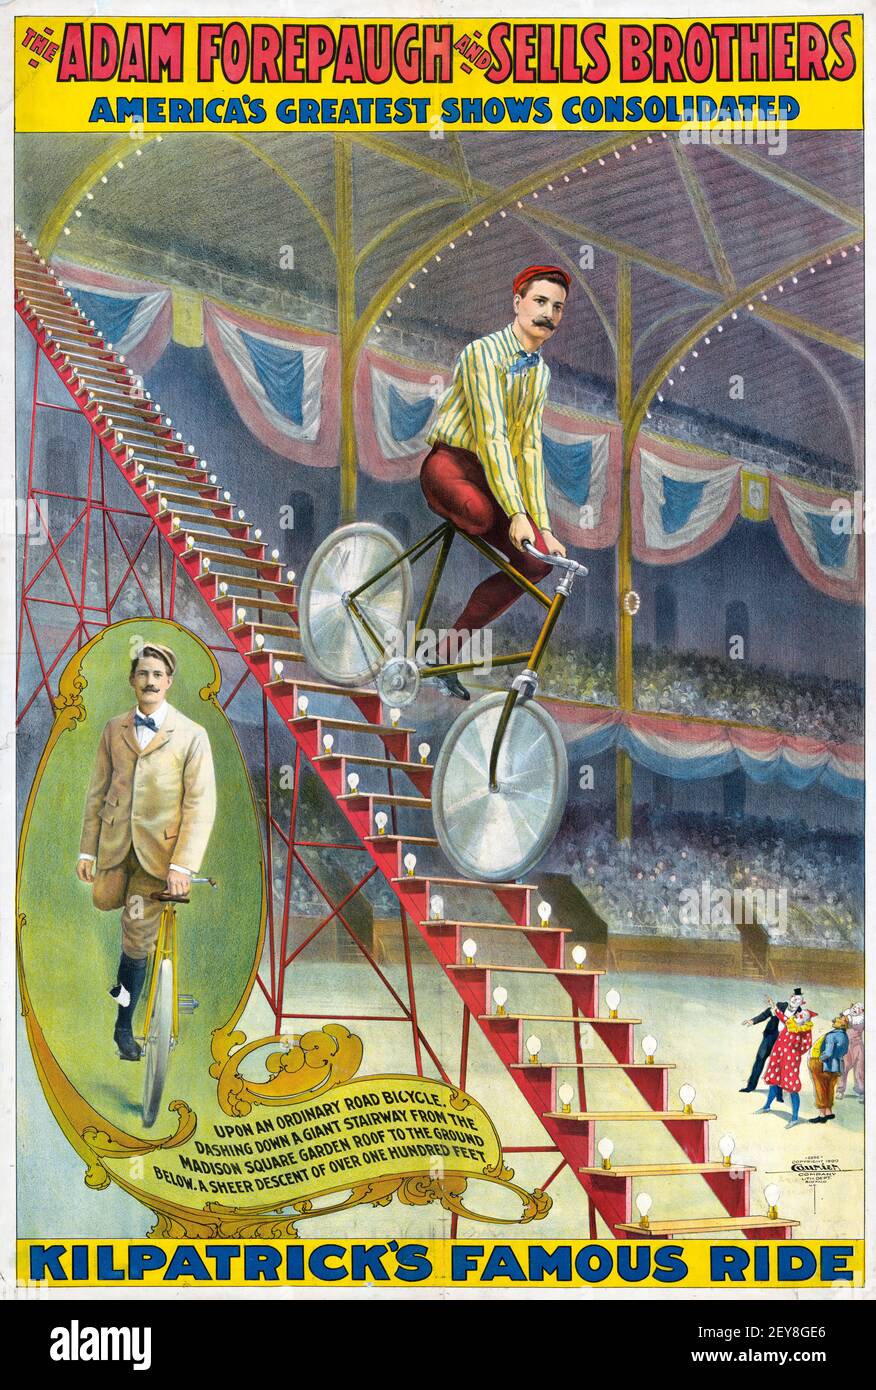 Adam Forepaugh und verkauft Brothers. Konsolidierte Shows. Zirkusposter, antik und im alten Stil. Mann, der mit dem Fahrrad die Treppe hinunter fährt. Stockfoto